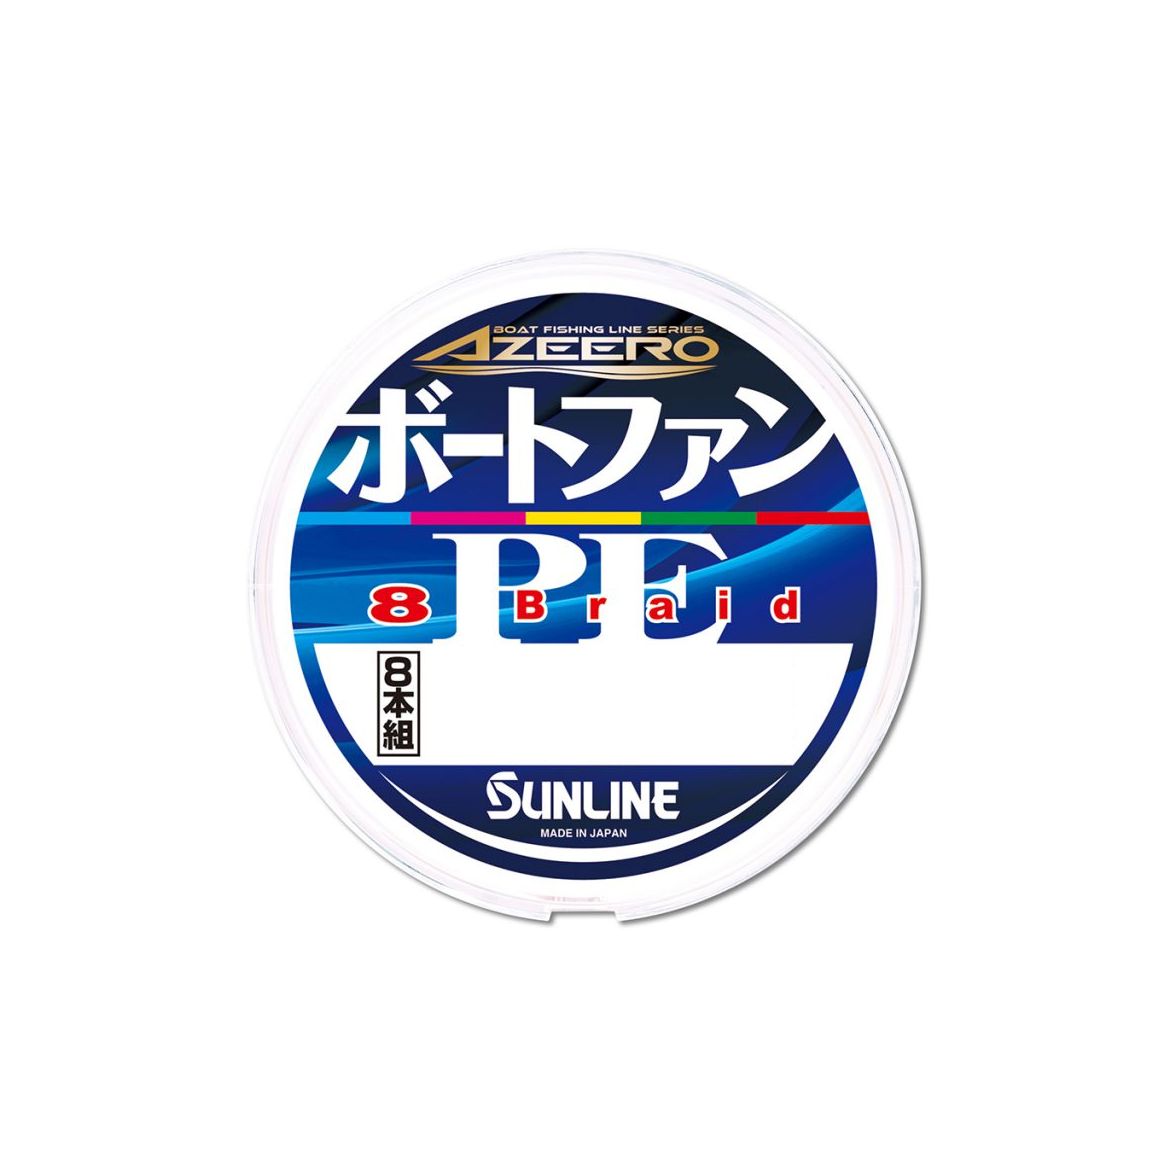 SUNLINE アジーロ ボートファン PE X8 1.0号/13.0lb/5色/200m